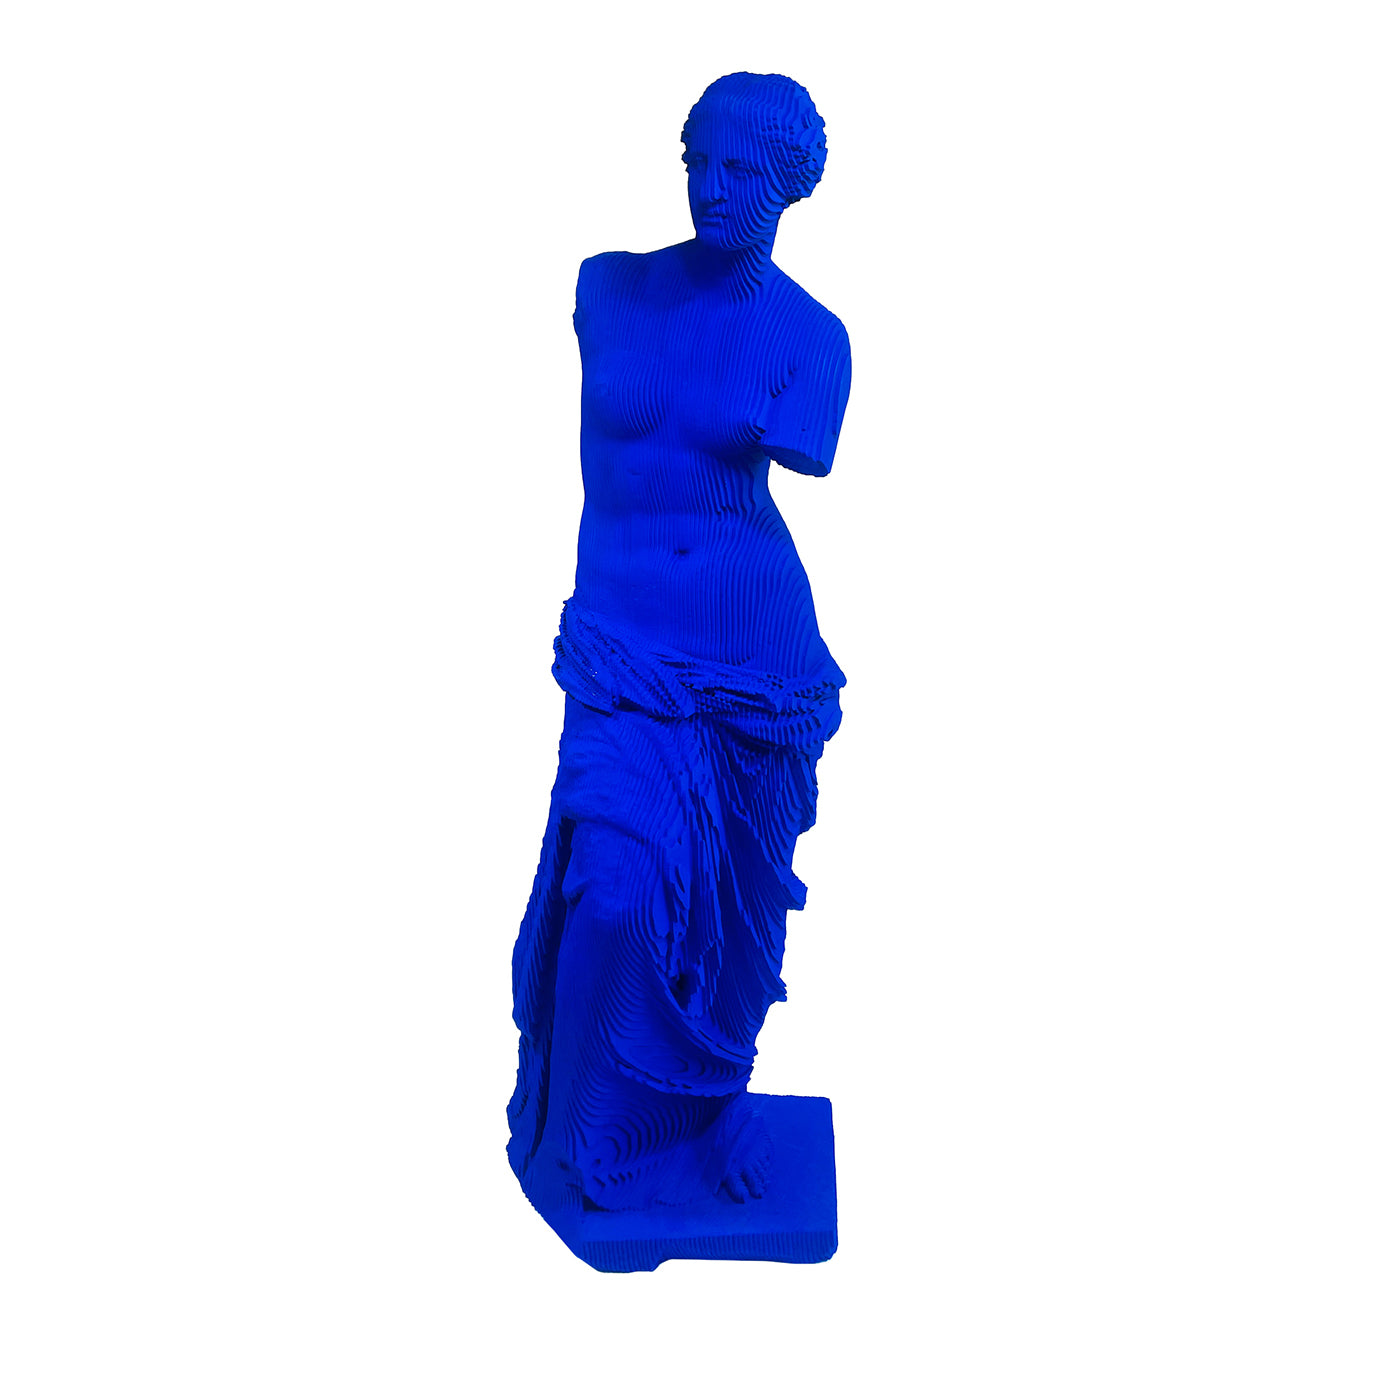 Venus Milo Blaue Skulptur - Hauptansicht